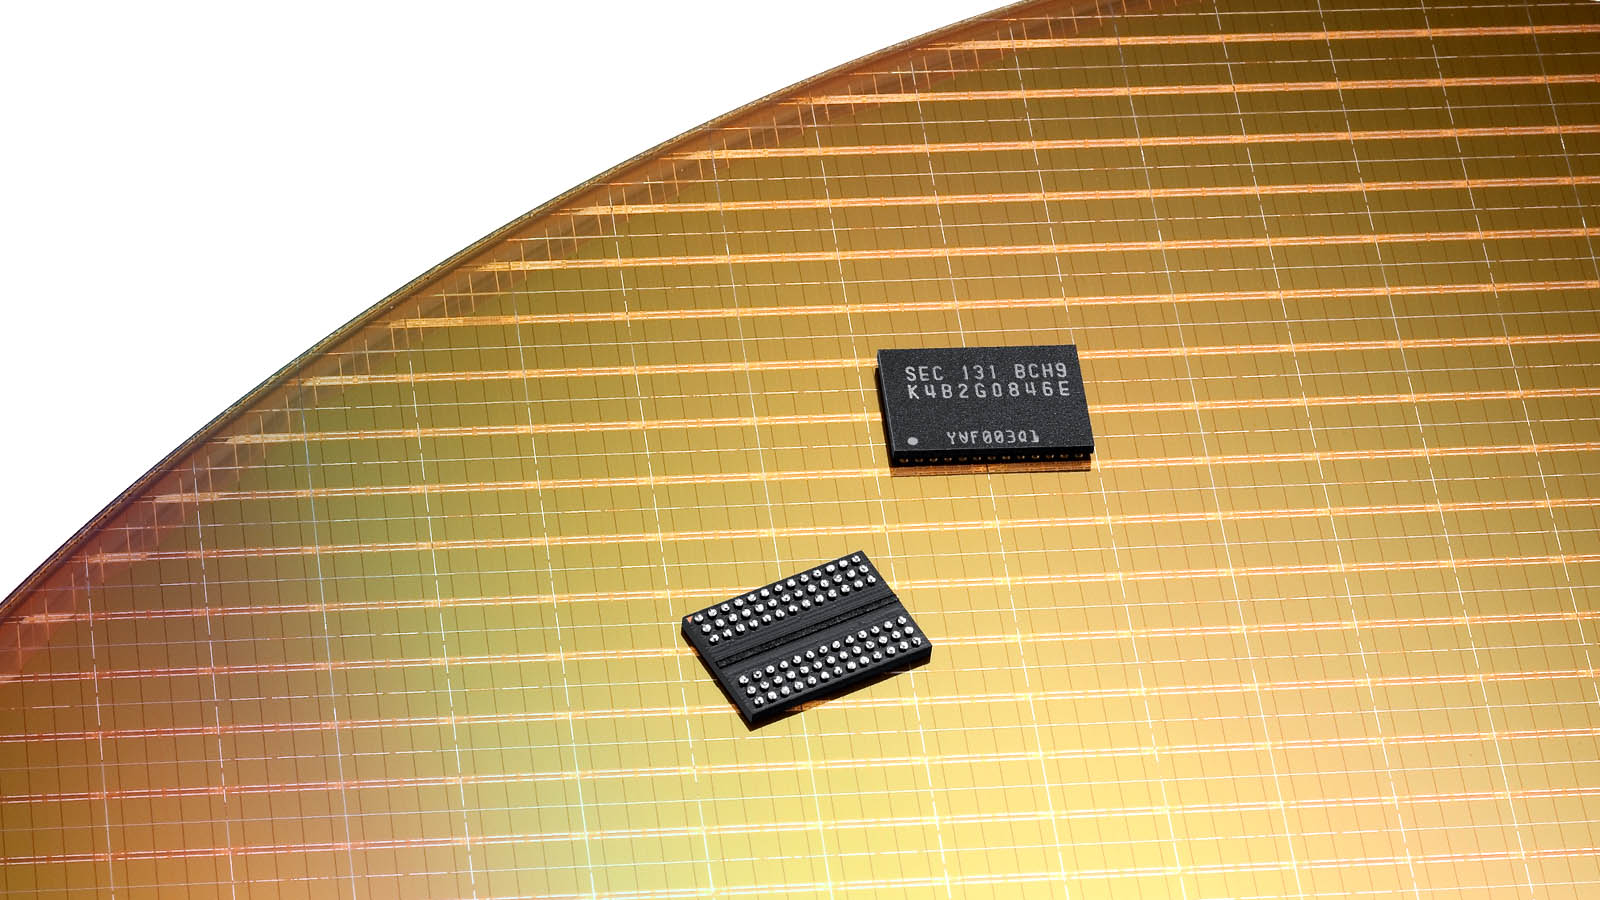 LPDDR4 DDR4 memória móvel micron samsung 